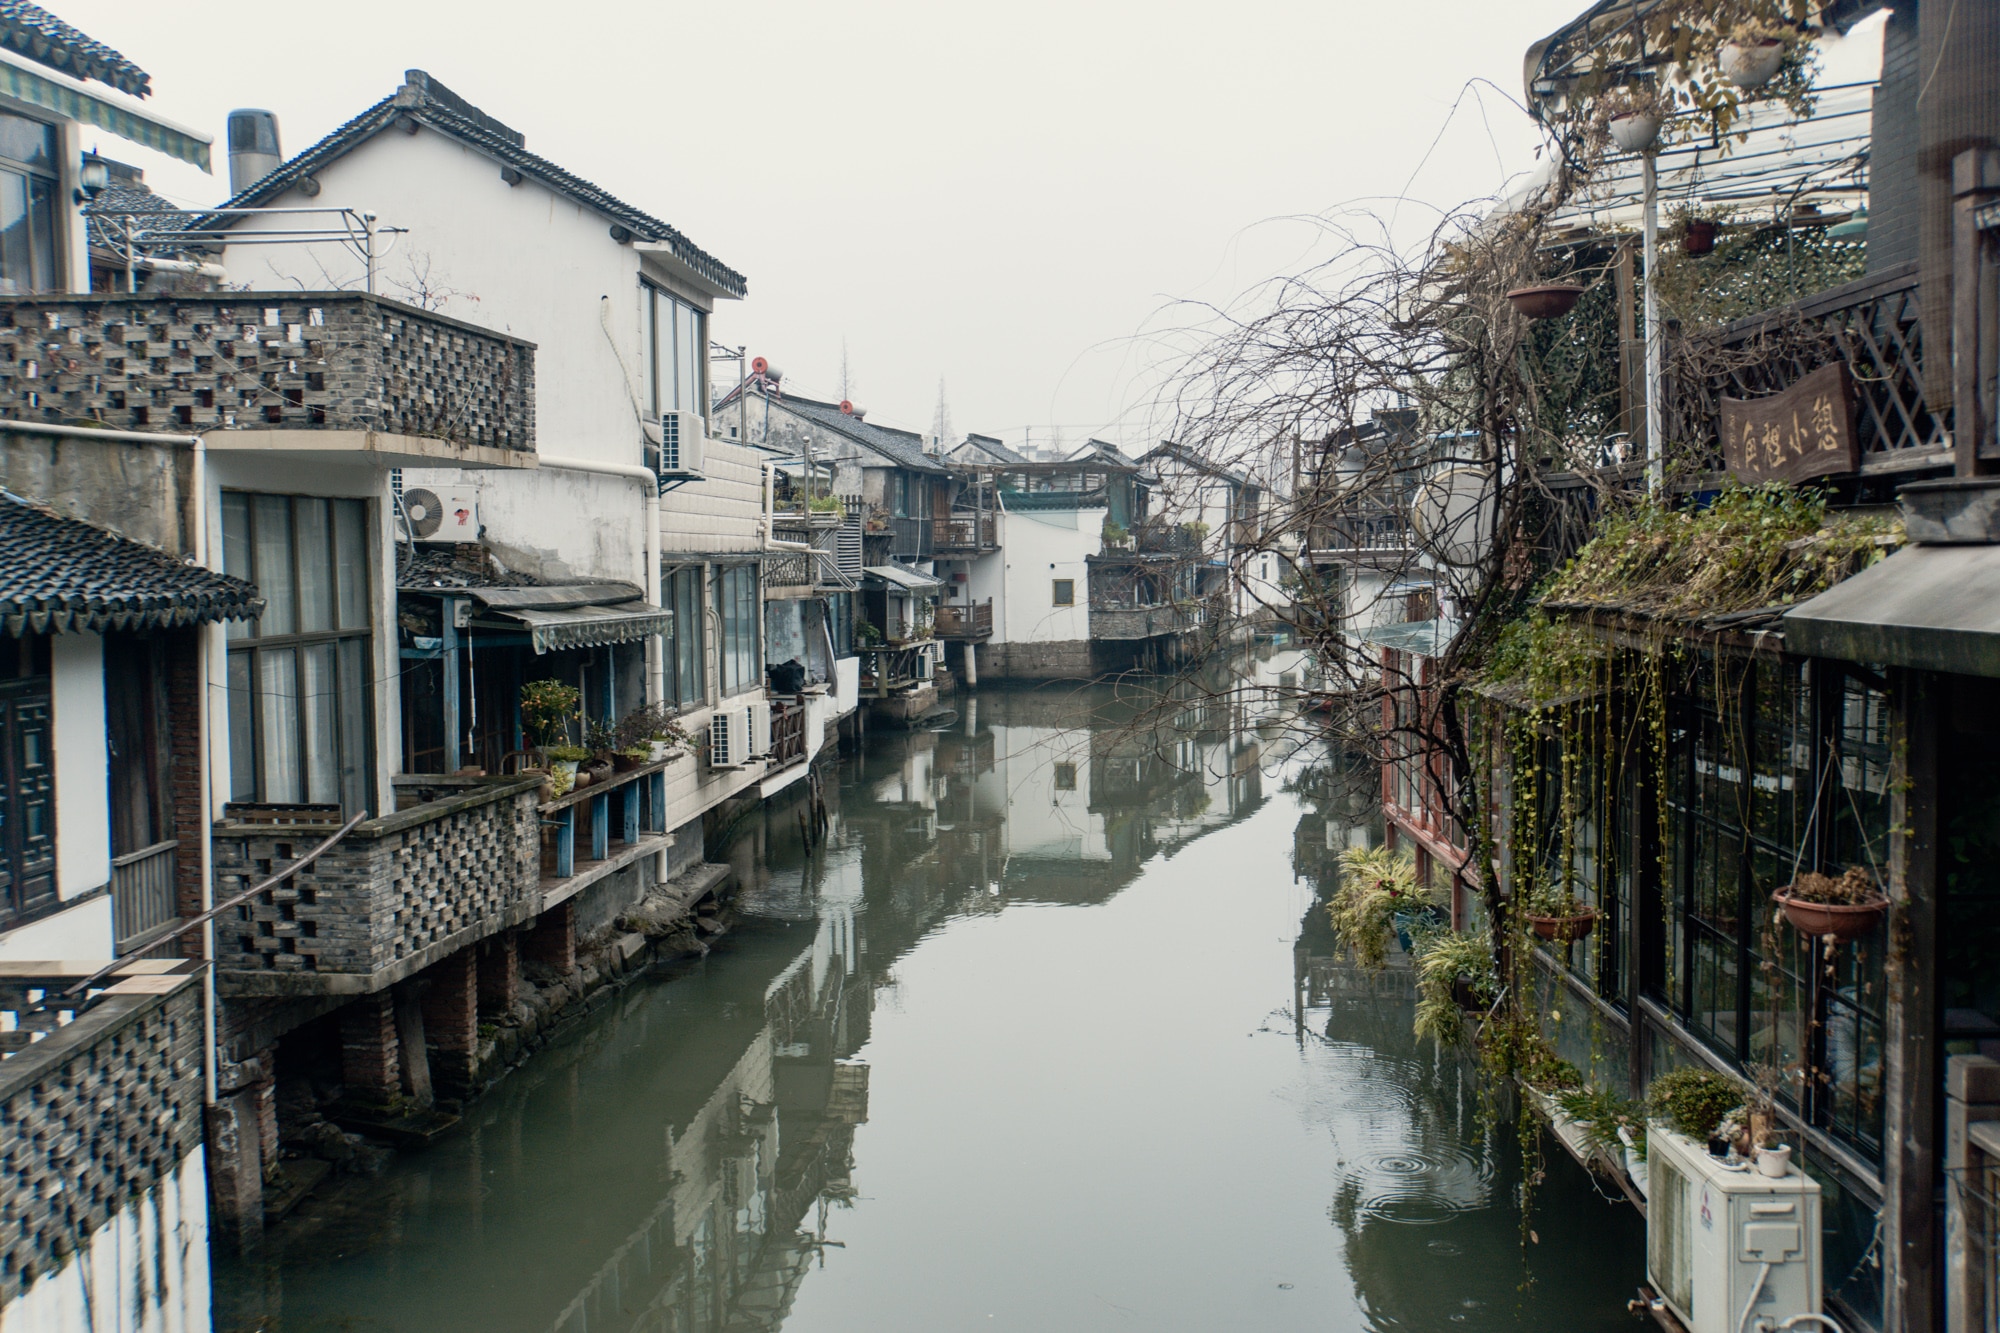 Zhujiajiao Tagesausflug: Tipps für die Wasserstadt bei Shanghai